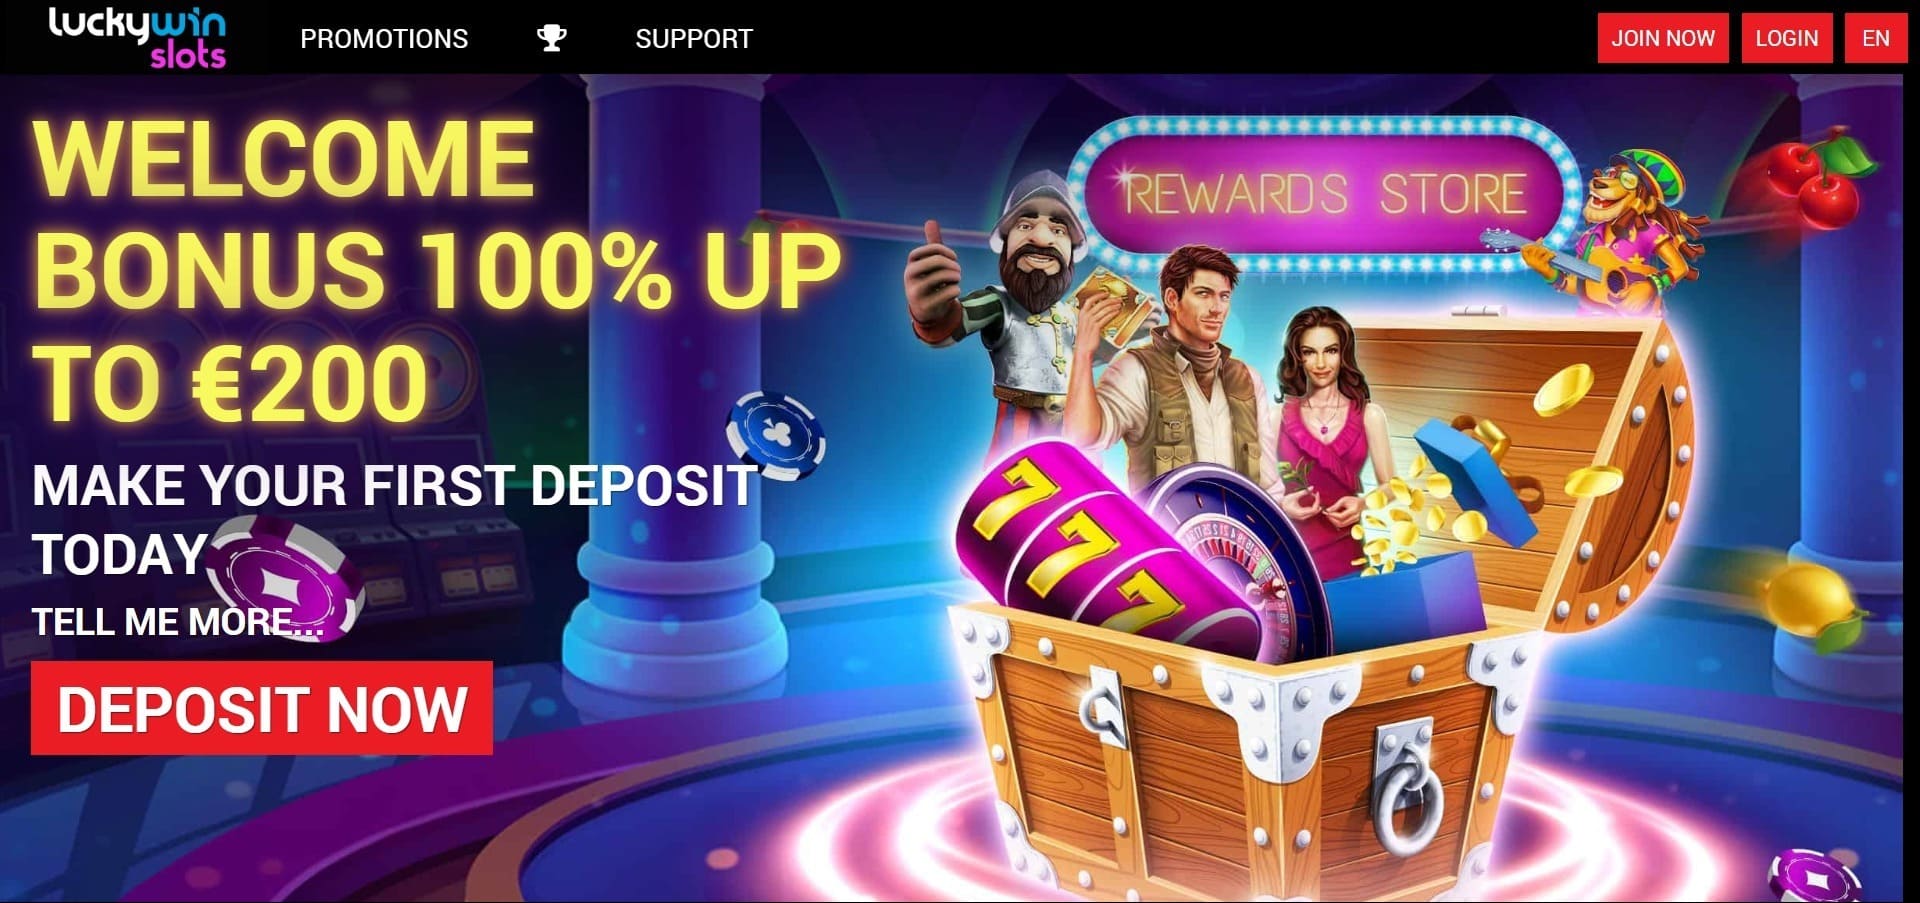 Sitio web oficial de la Lucky Win Slots Casino